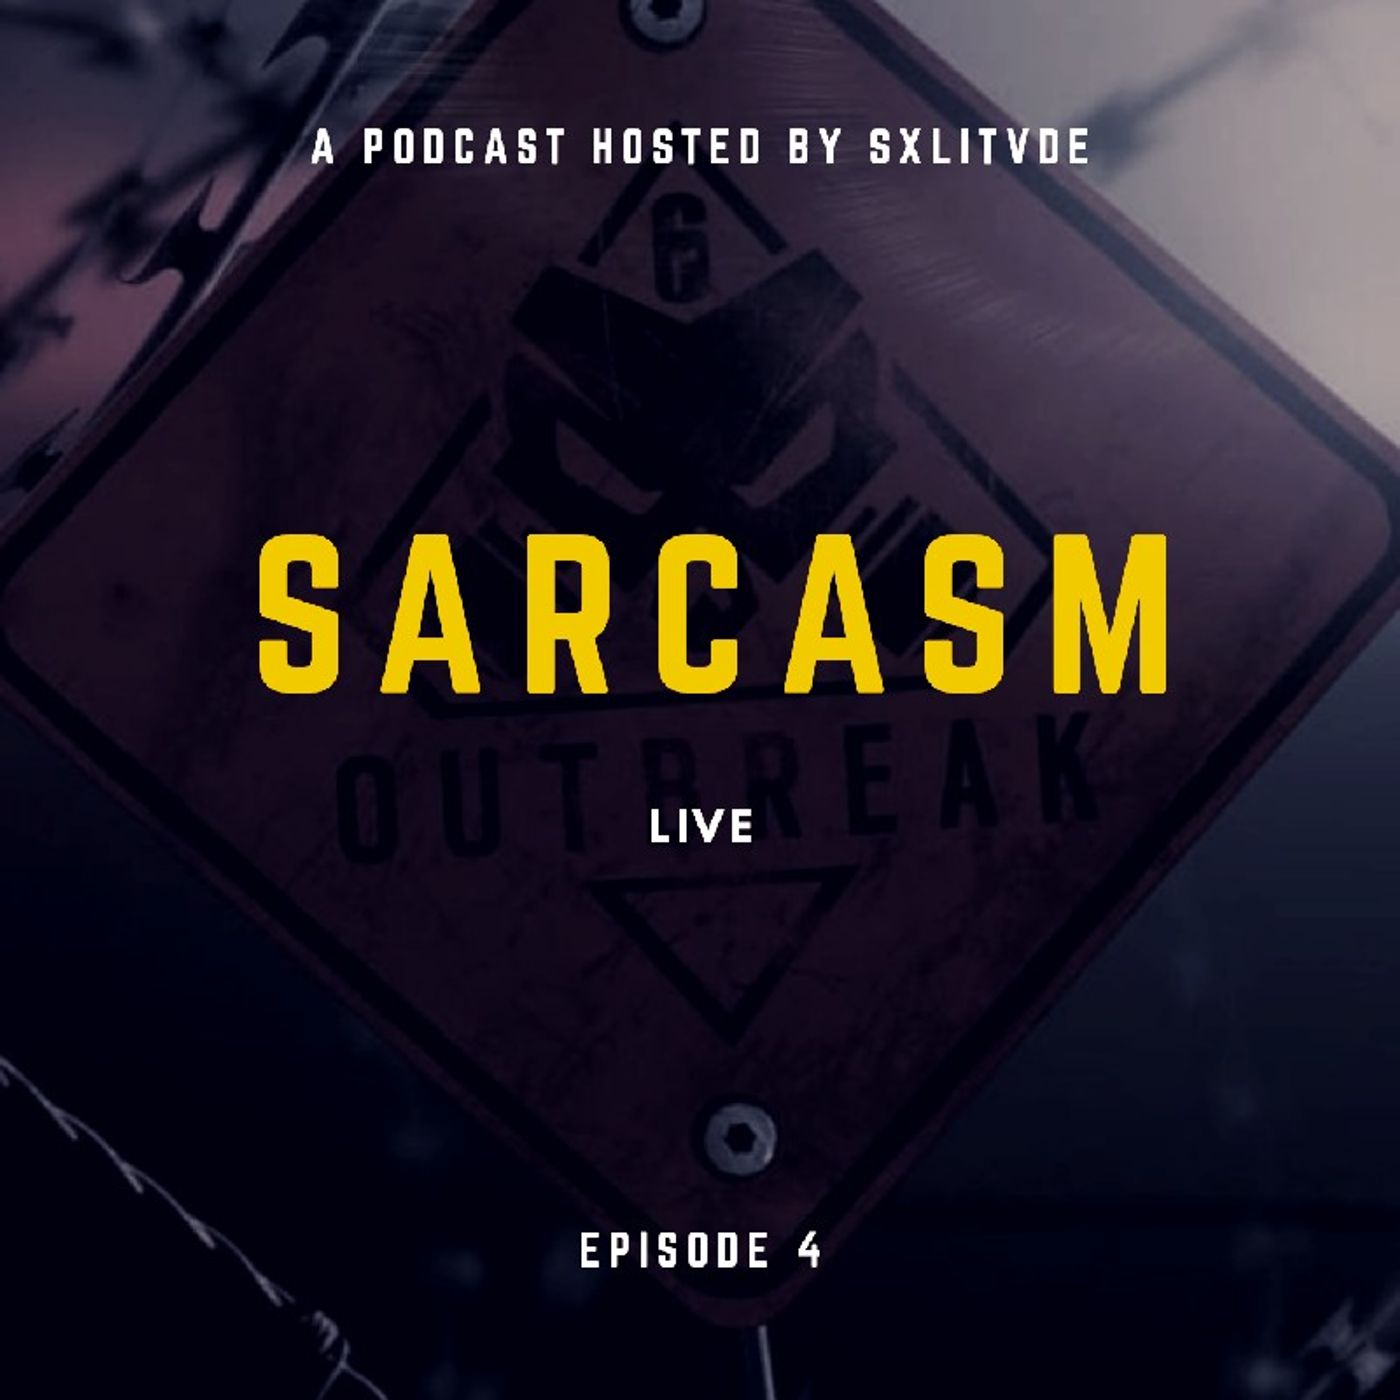 Episode 4 - Sarcasm Live